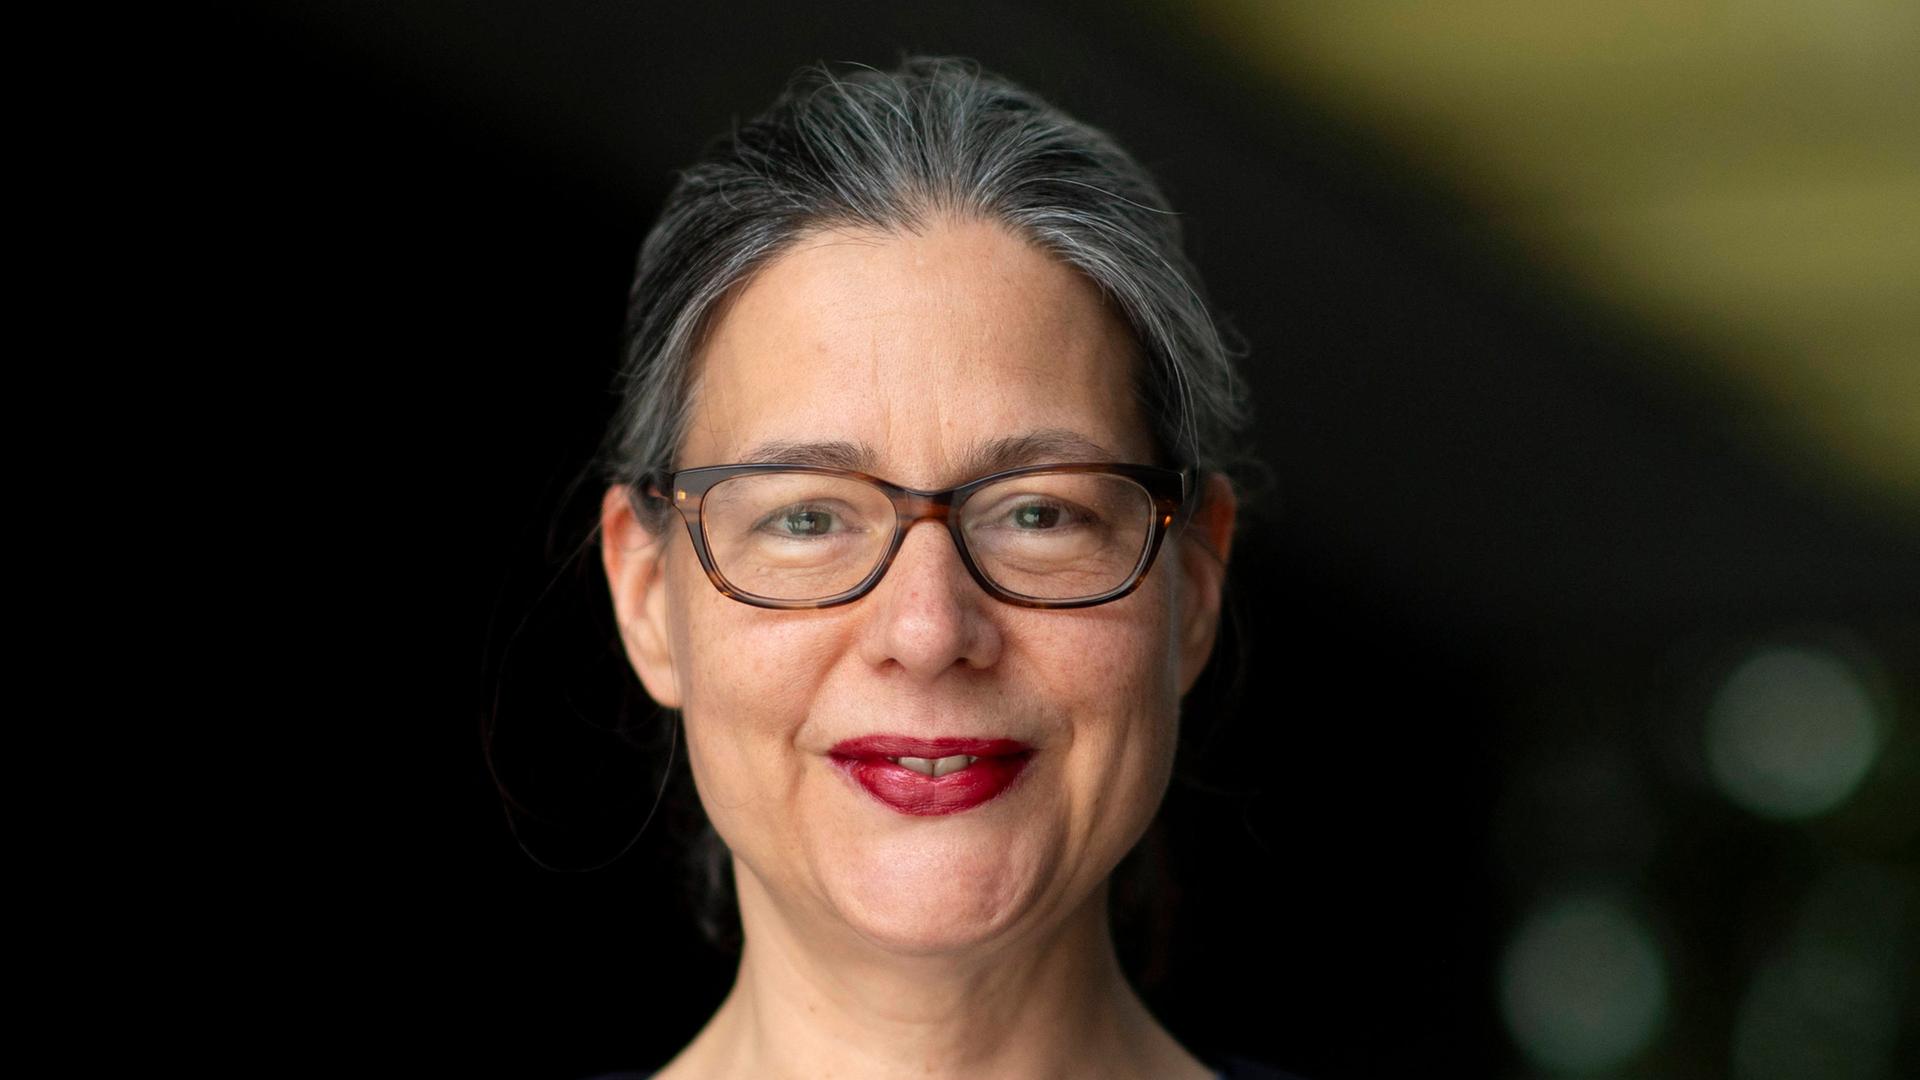 Porträt von Nina Scheer (SPD). Sie guckt vor dunklem unscharfem Hintergrund in die Kamera und lächelt. Sie trägt eine Brille und roten Lippenstift. Dazu eine blaue Jacke über einem grauen Oberteil.